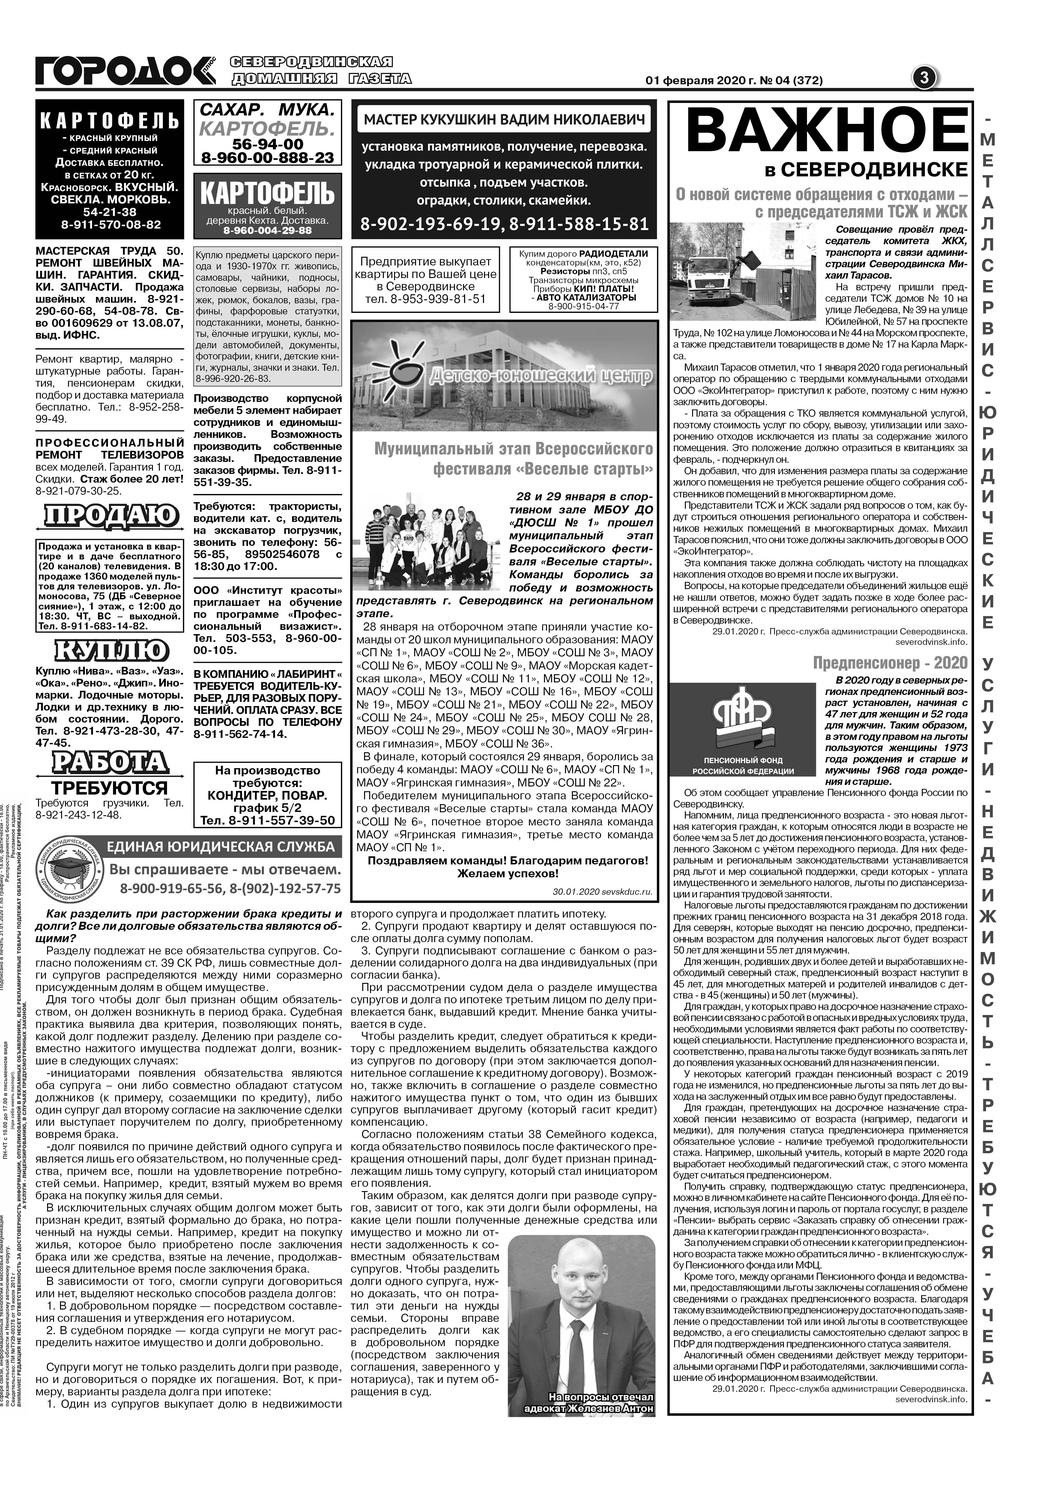 Городок плюс, выпуск номер 4 от 01 февраля 2020 года, страница 3.